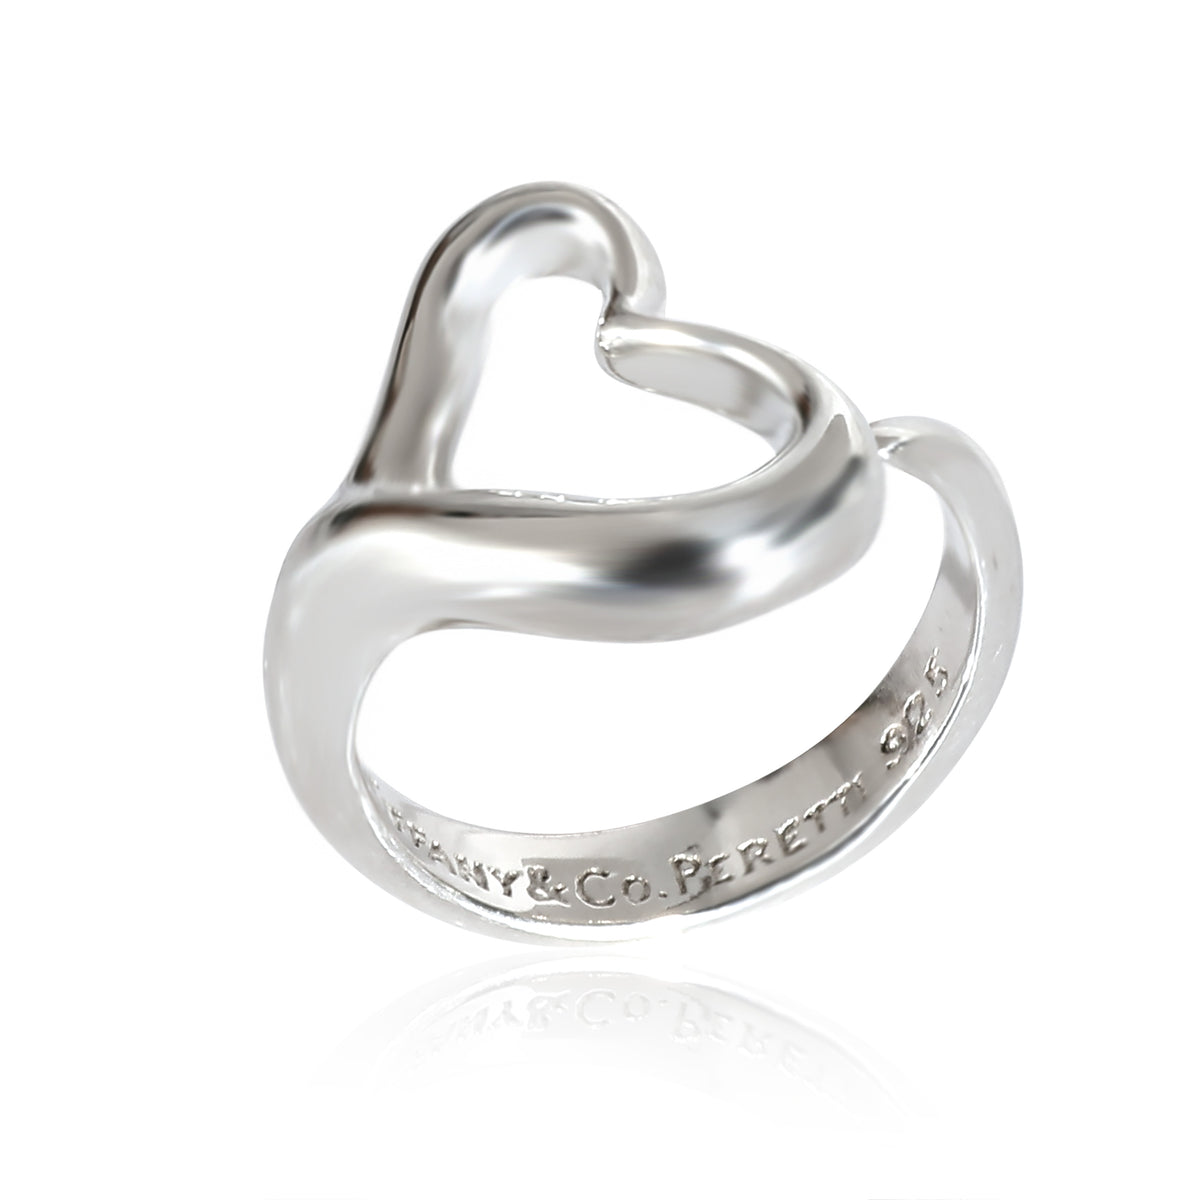 Elsa Peretti Open Heart Ring in Sterling Silver